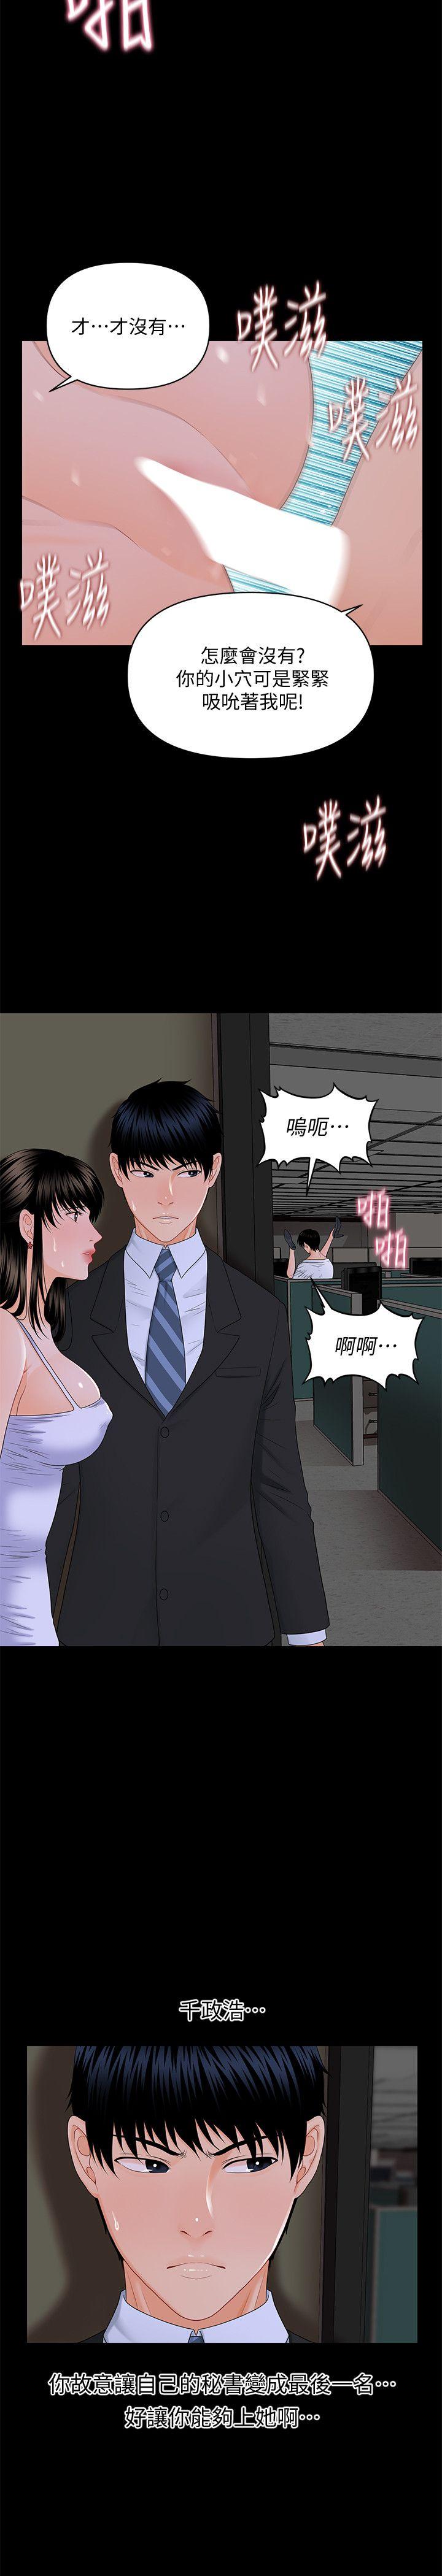 韩国污漫画 秘書的潛規則 第8话 12